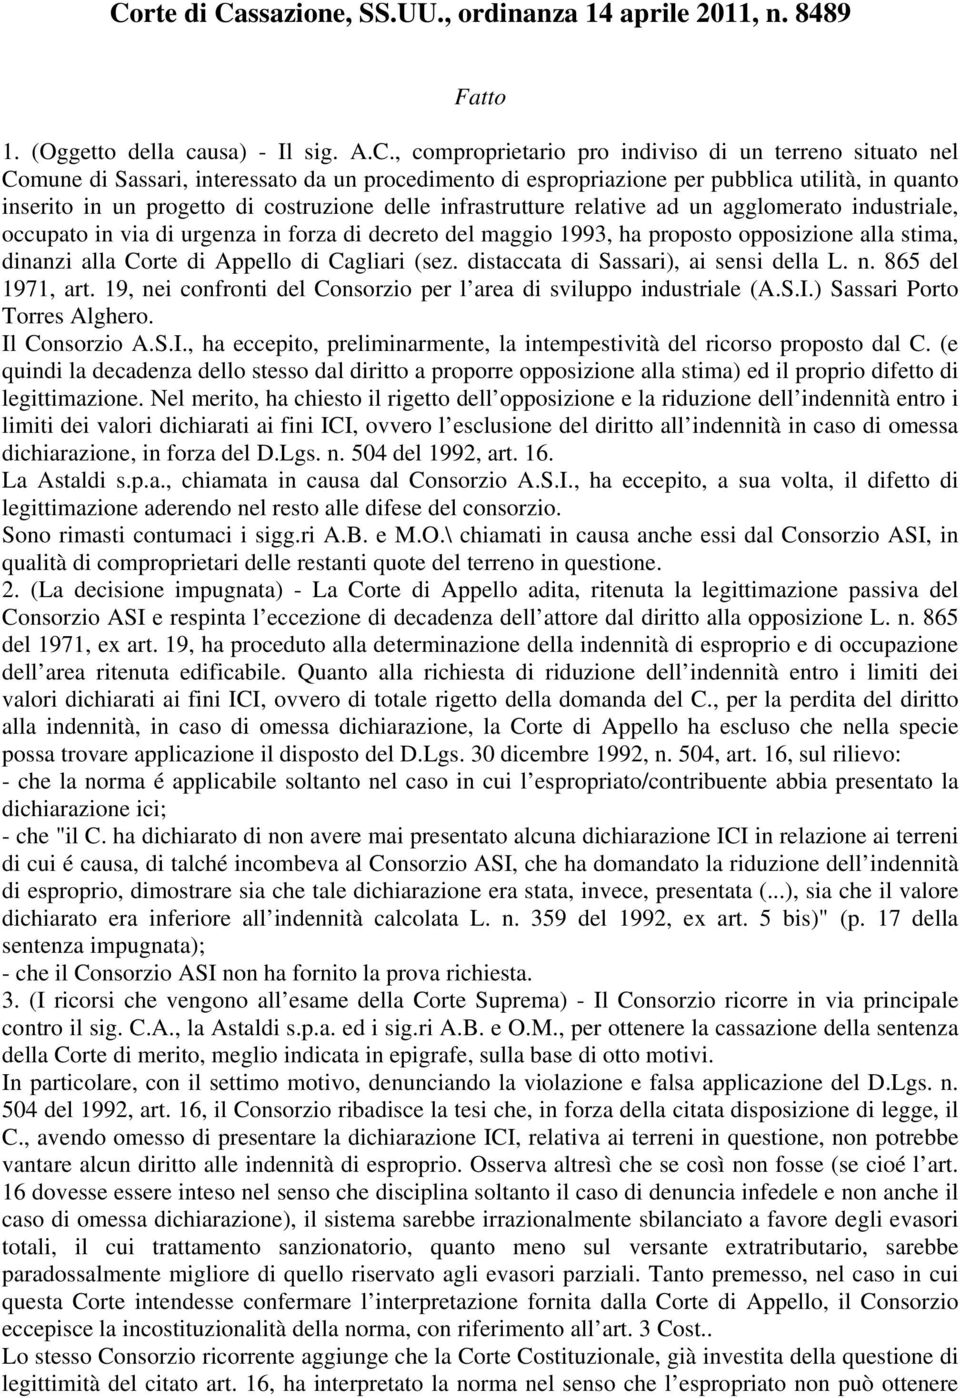 forza di decreto del maggio 1993, ha proposto opposizione alla stima, dinanzi alla Corte di Appello di Cagliari (sez. distaccata di Sassari), ai sensi della L. n. 865 del 1971, art.